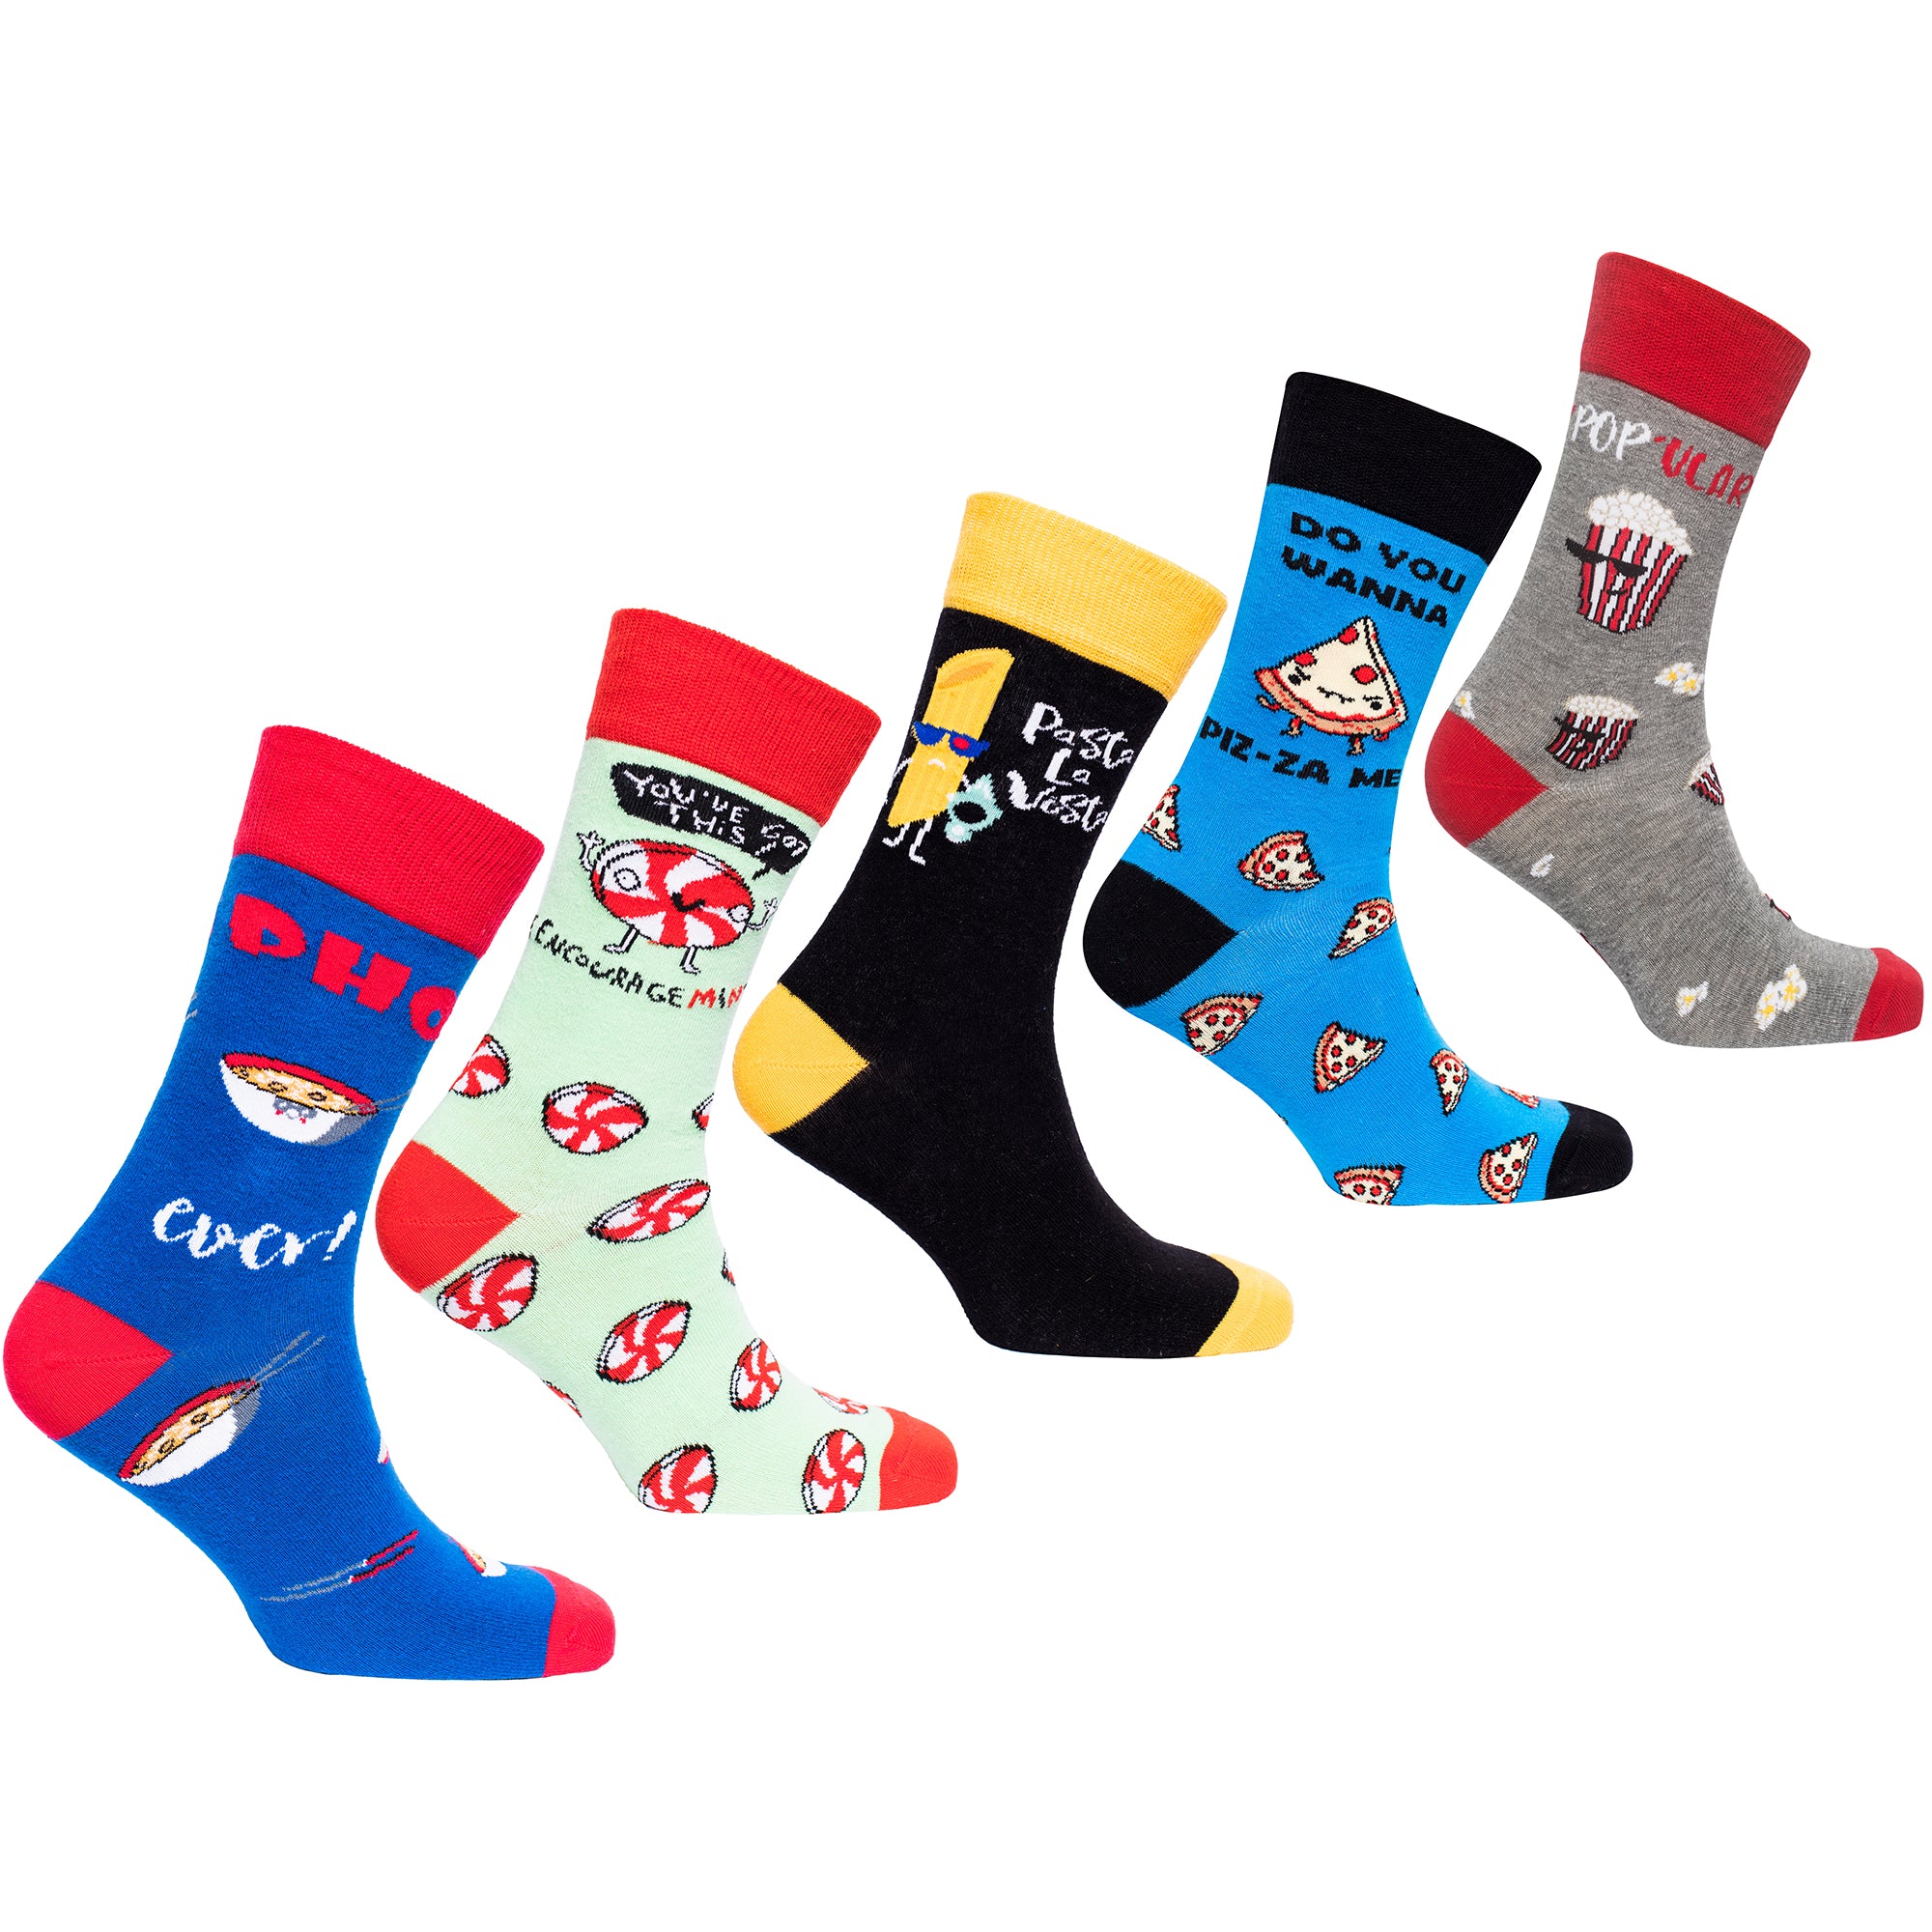 Gifts for Men - Socks n Socks